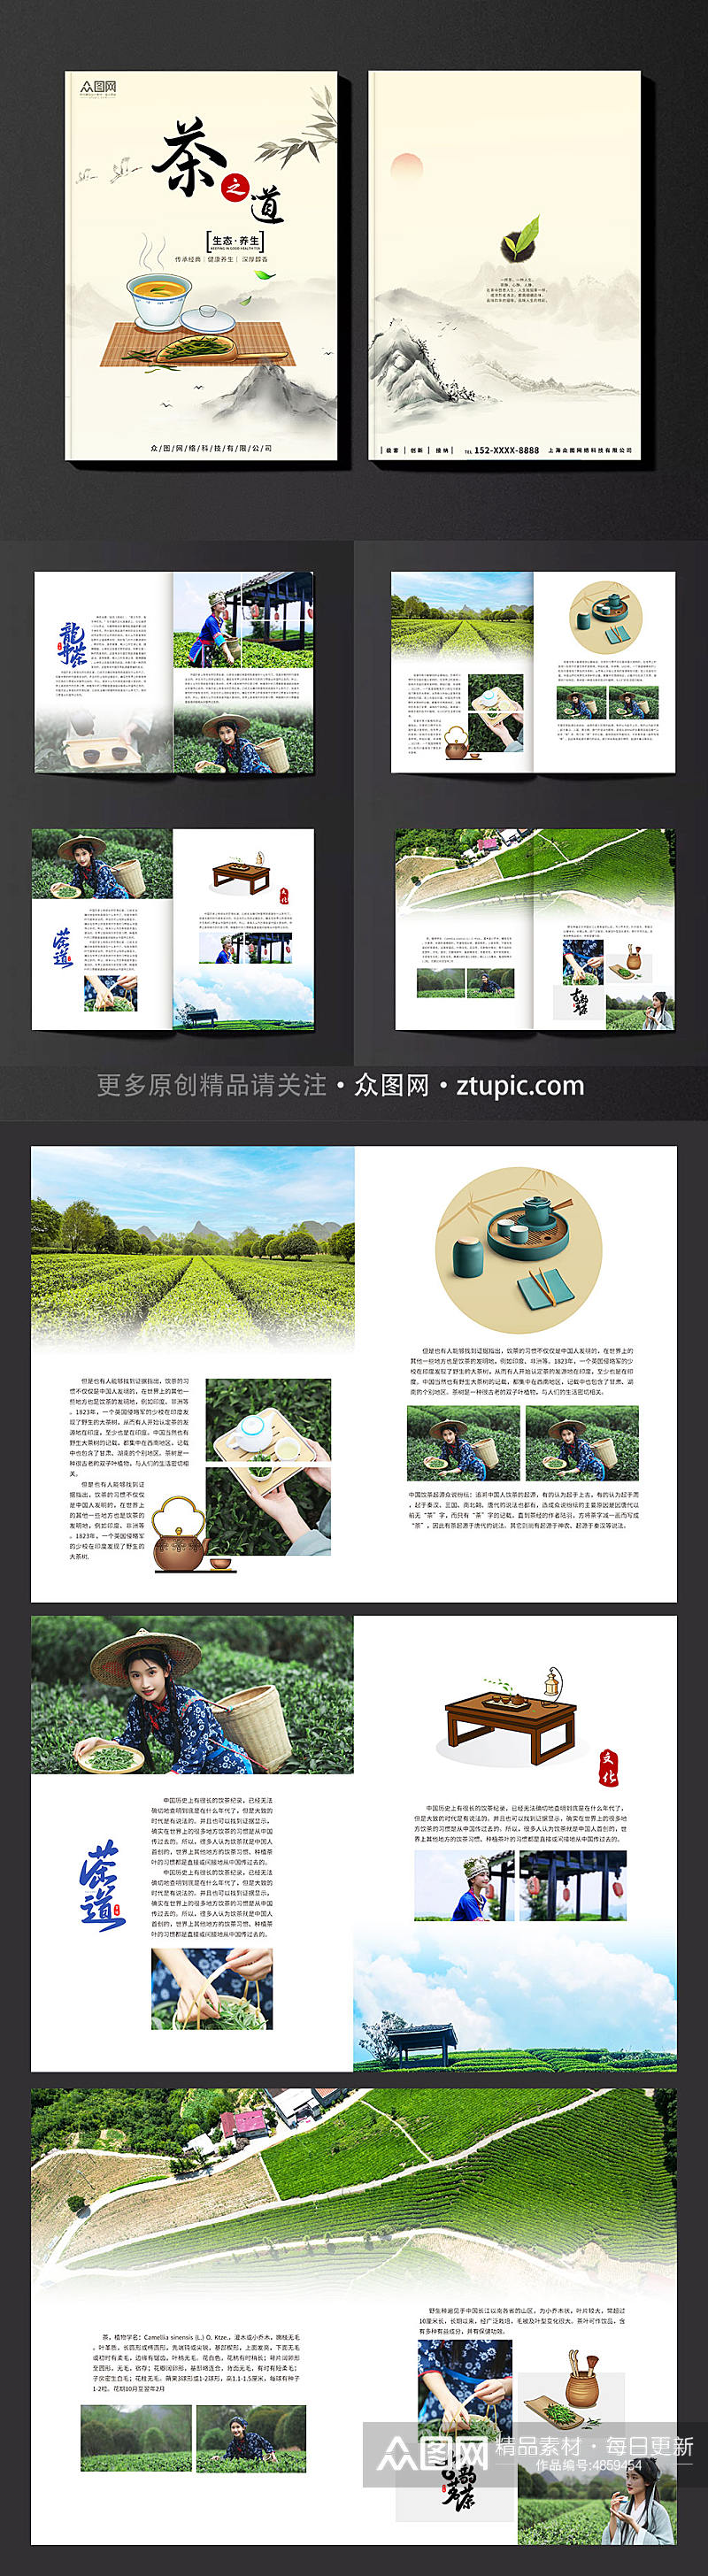 中国风茶园采茶项目茶叶茶文化宣传画册素材